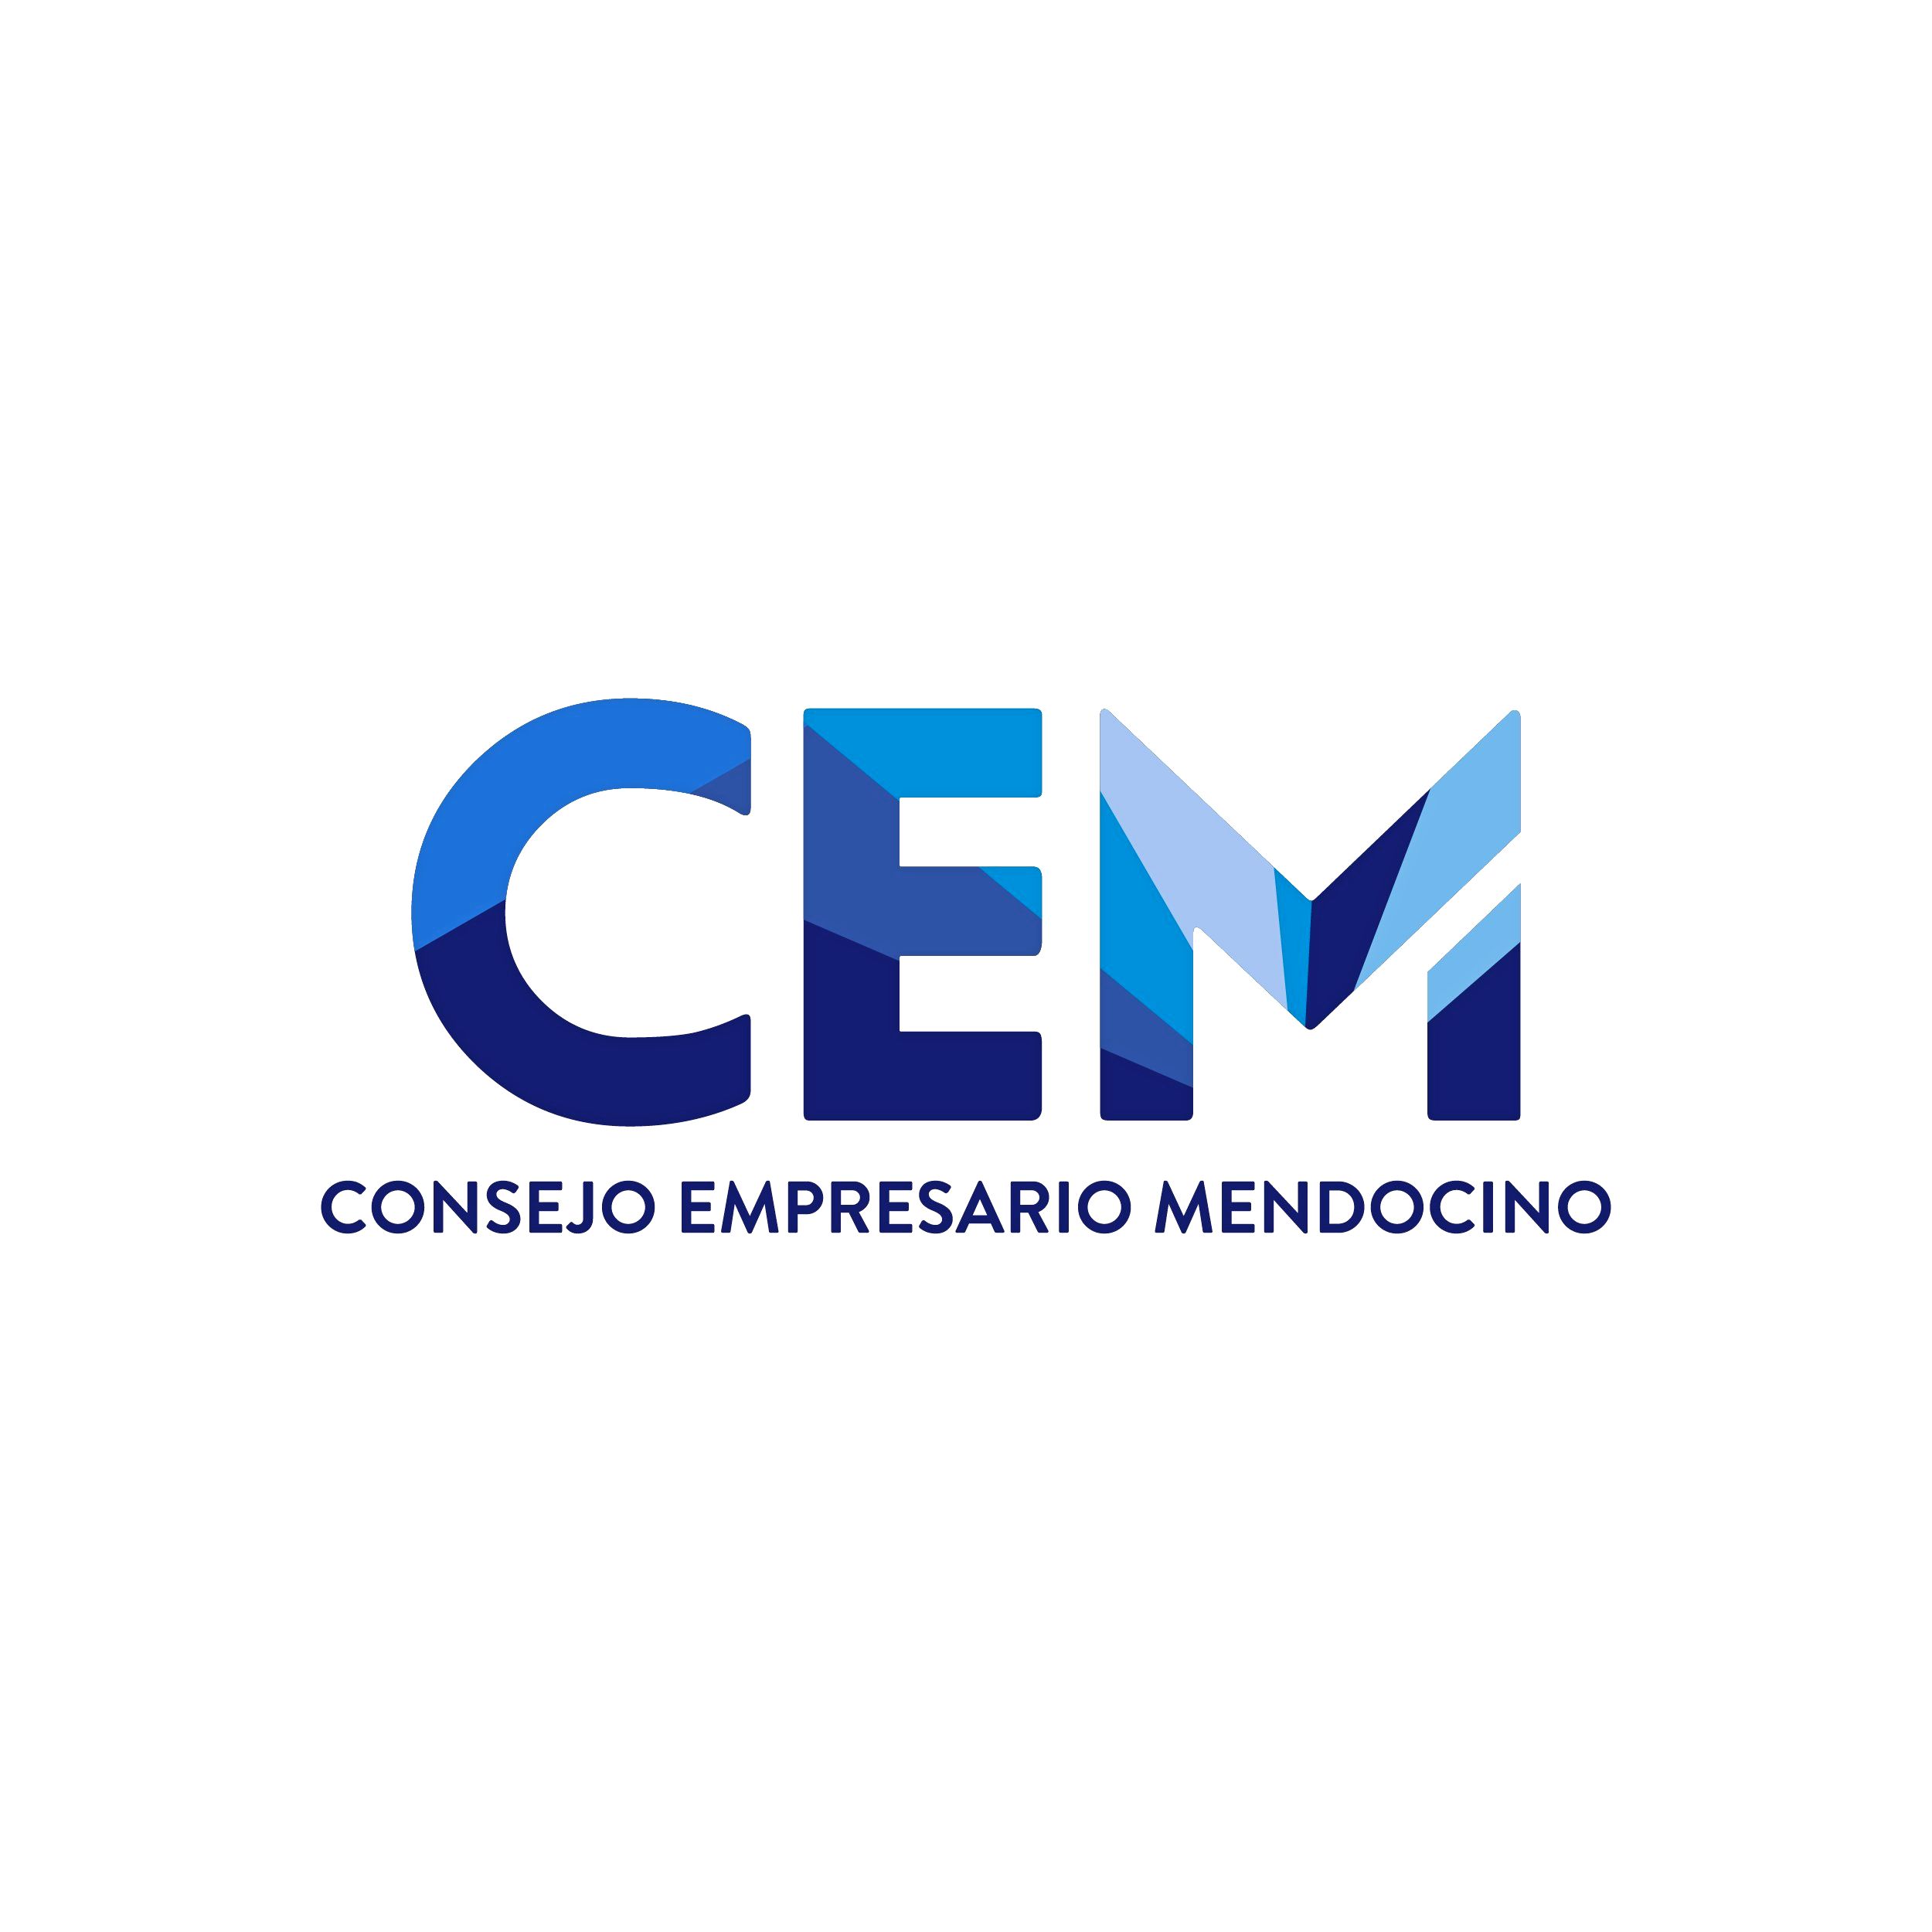 El peso del Estado en Mendoza aumentó 40% en una década según el CEM